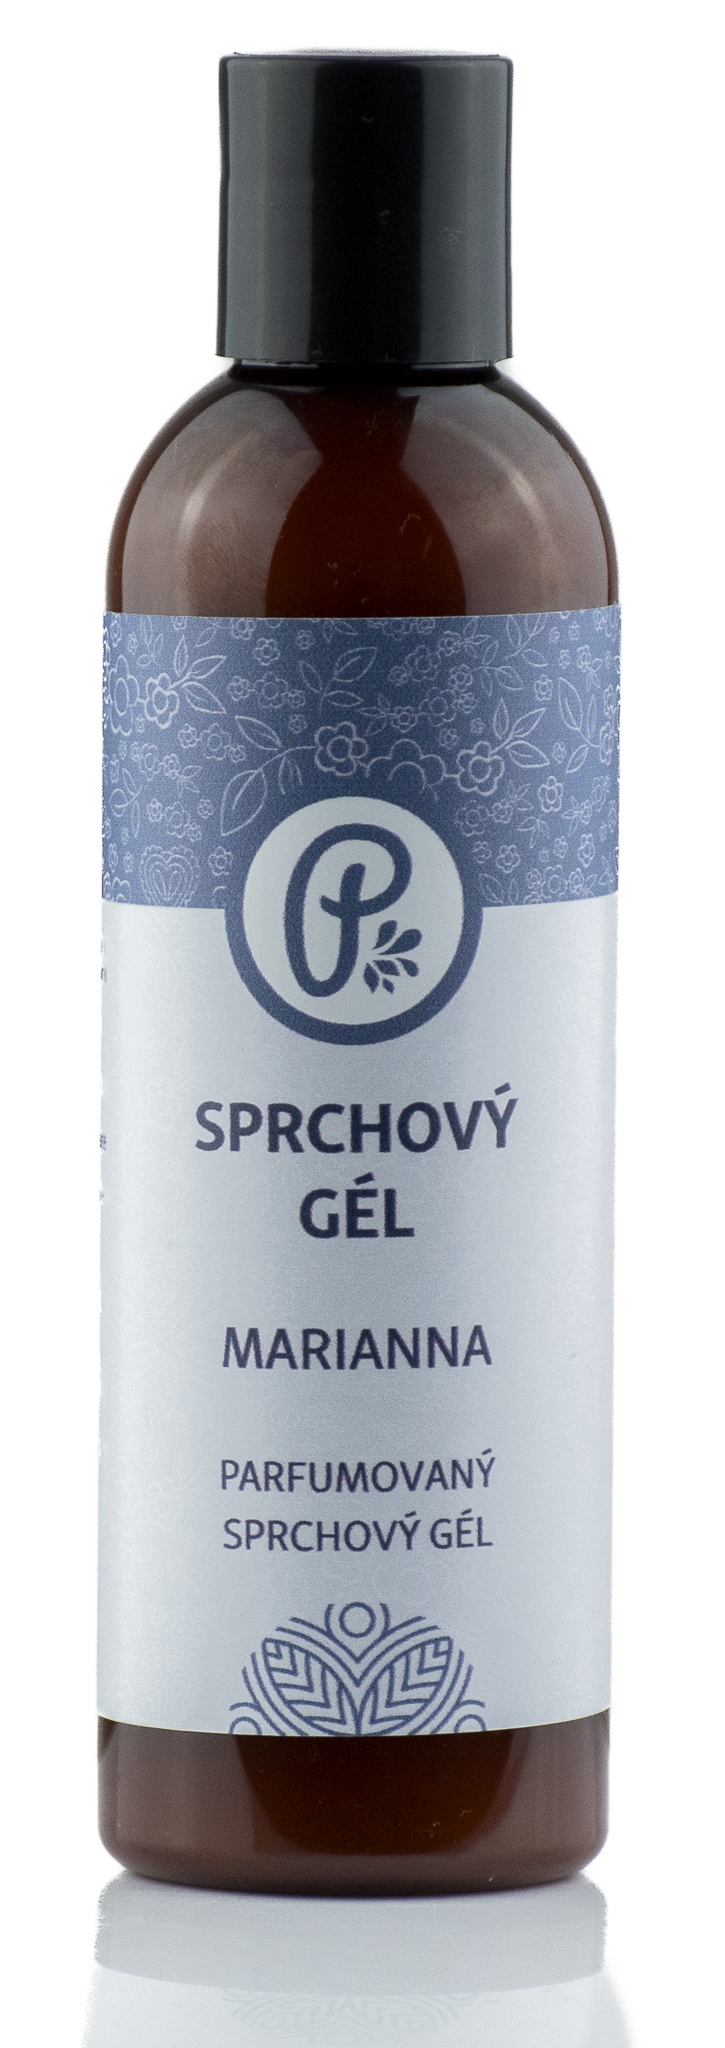 PANAKEIA Parfumovaný sprchový gél - Marianna 200ml